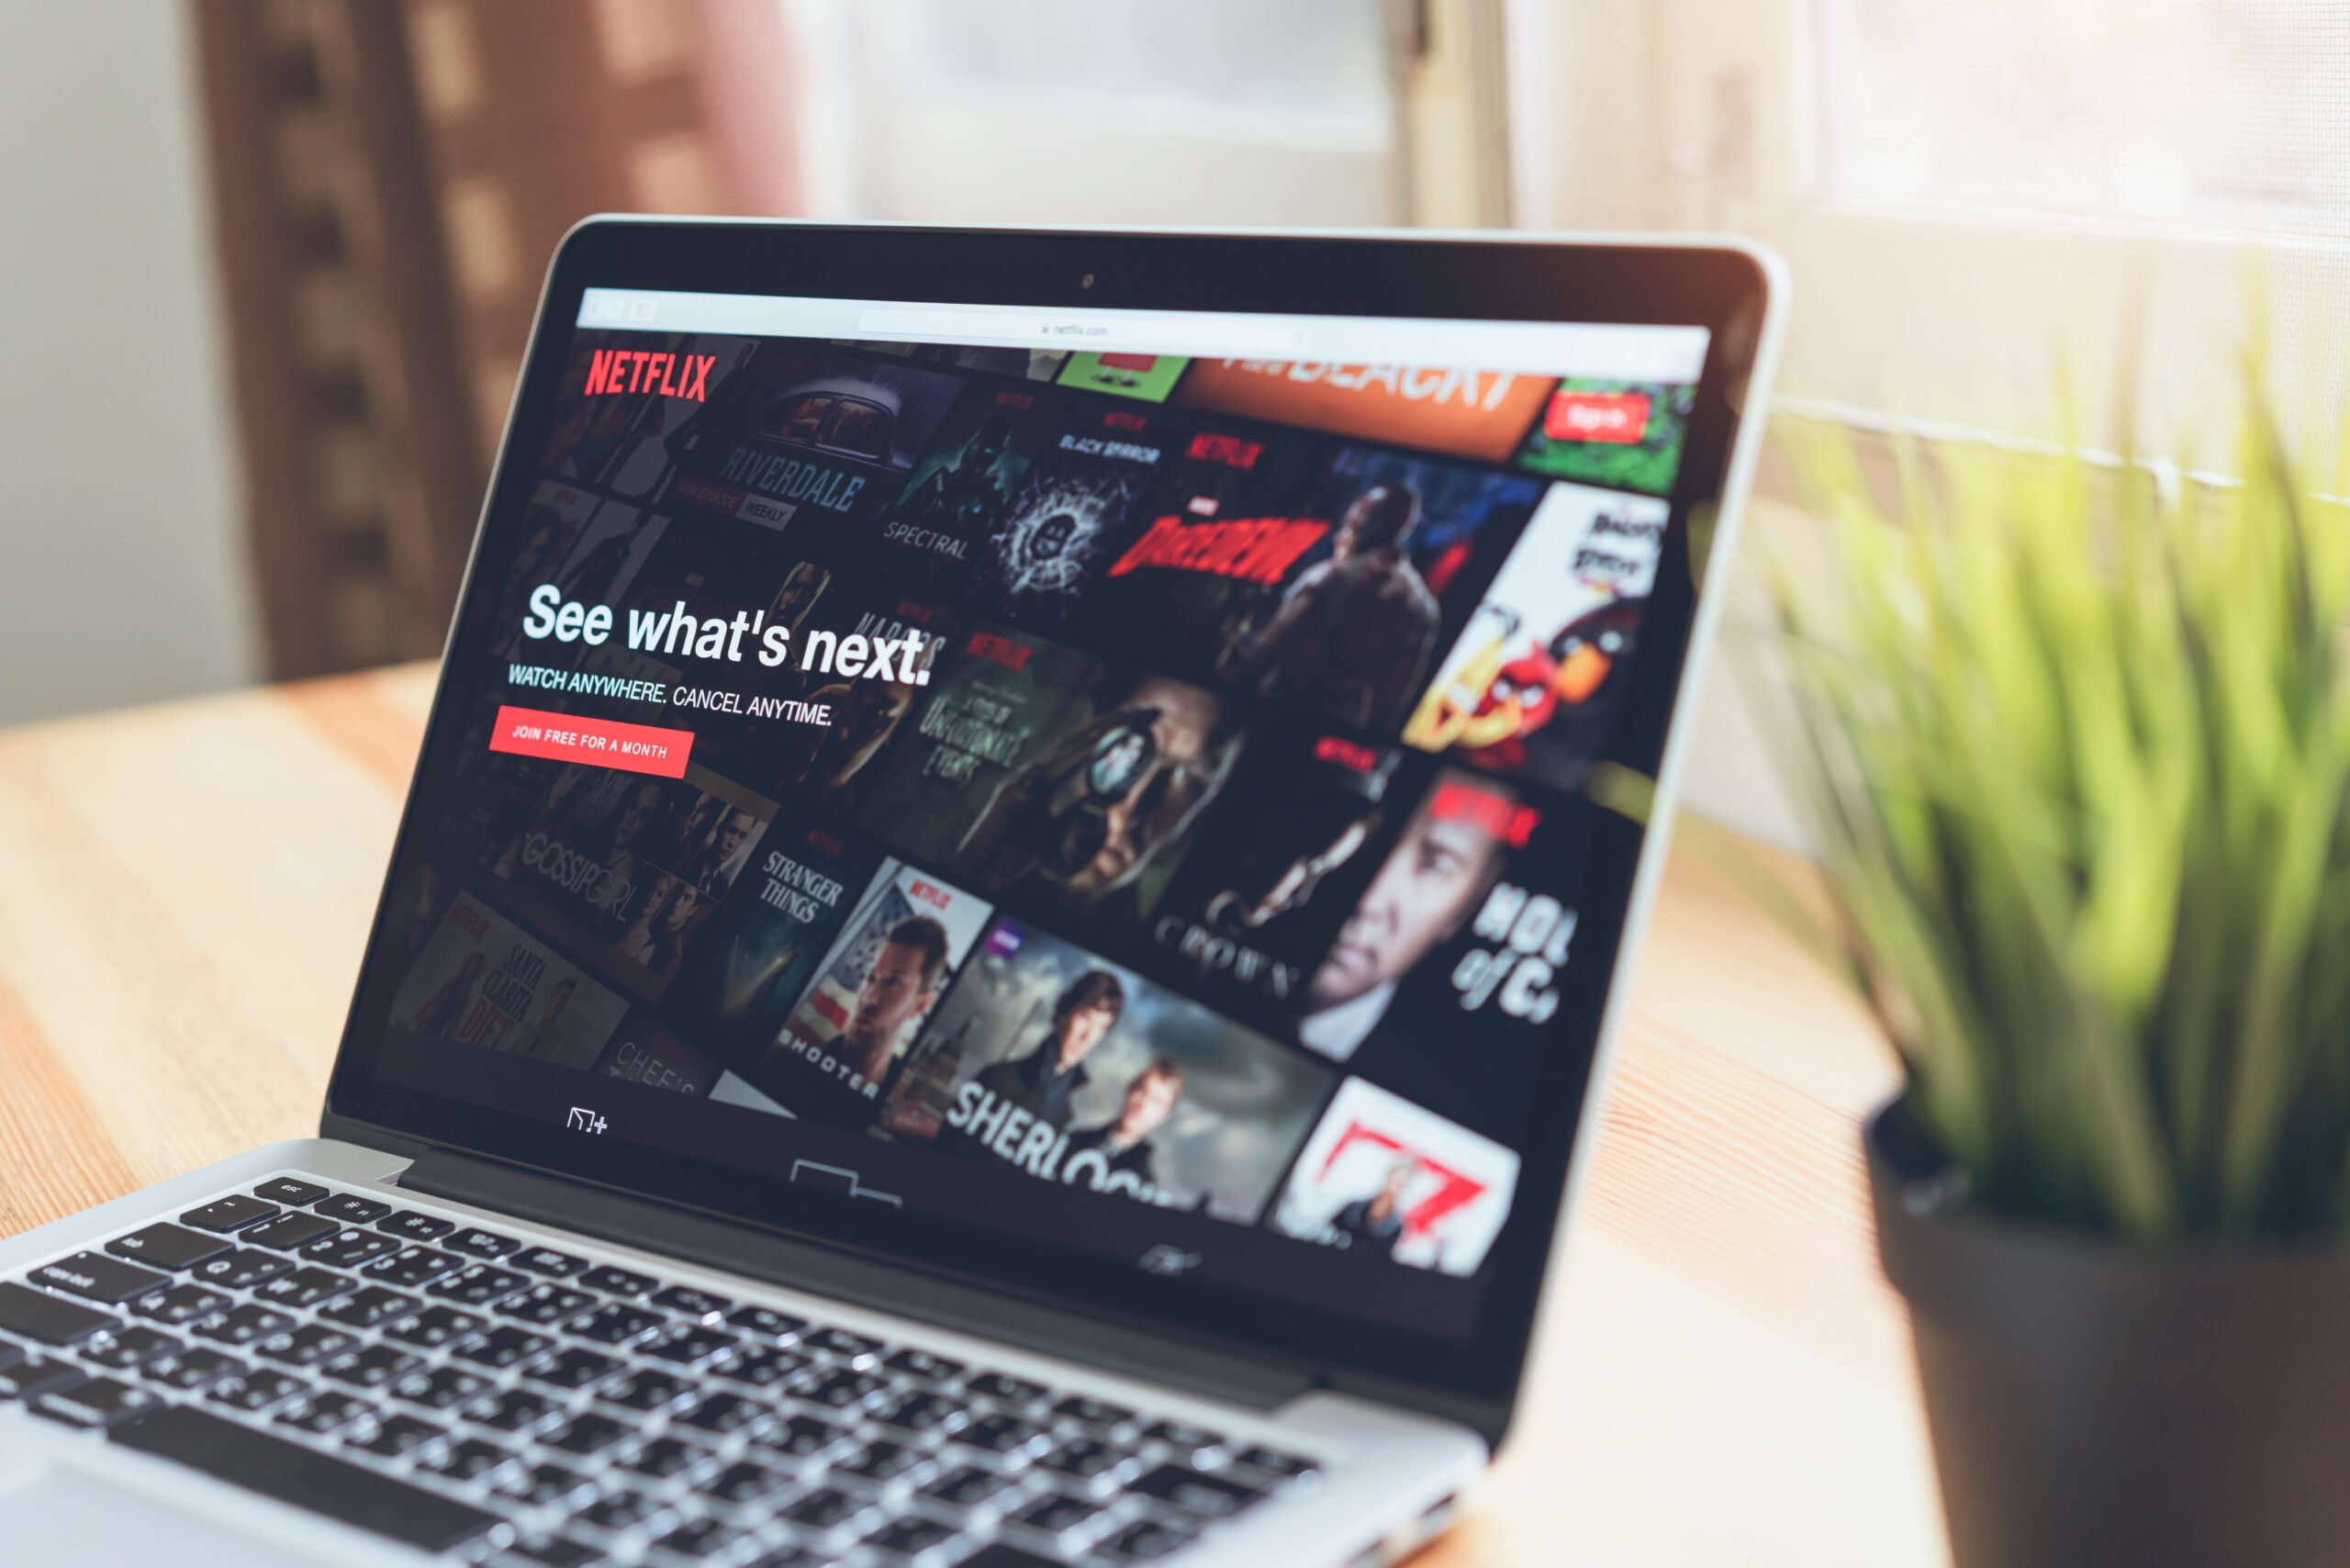 Laptop na stole wyświetlający stronę główną serwisu Netflix z dostępnymi filmami i serialami; obok laptopa doniczka z zieloną rośliną.